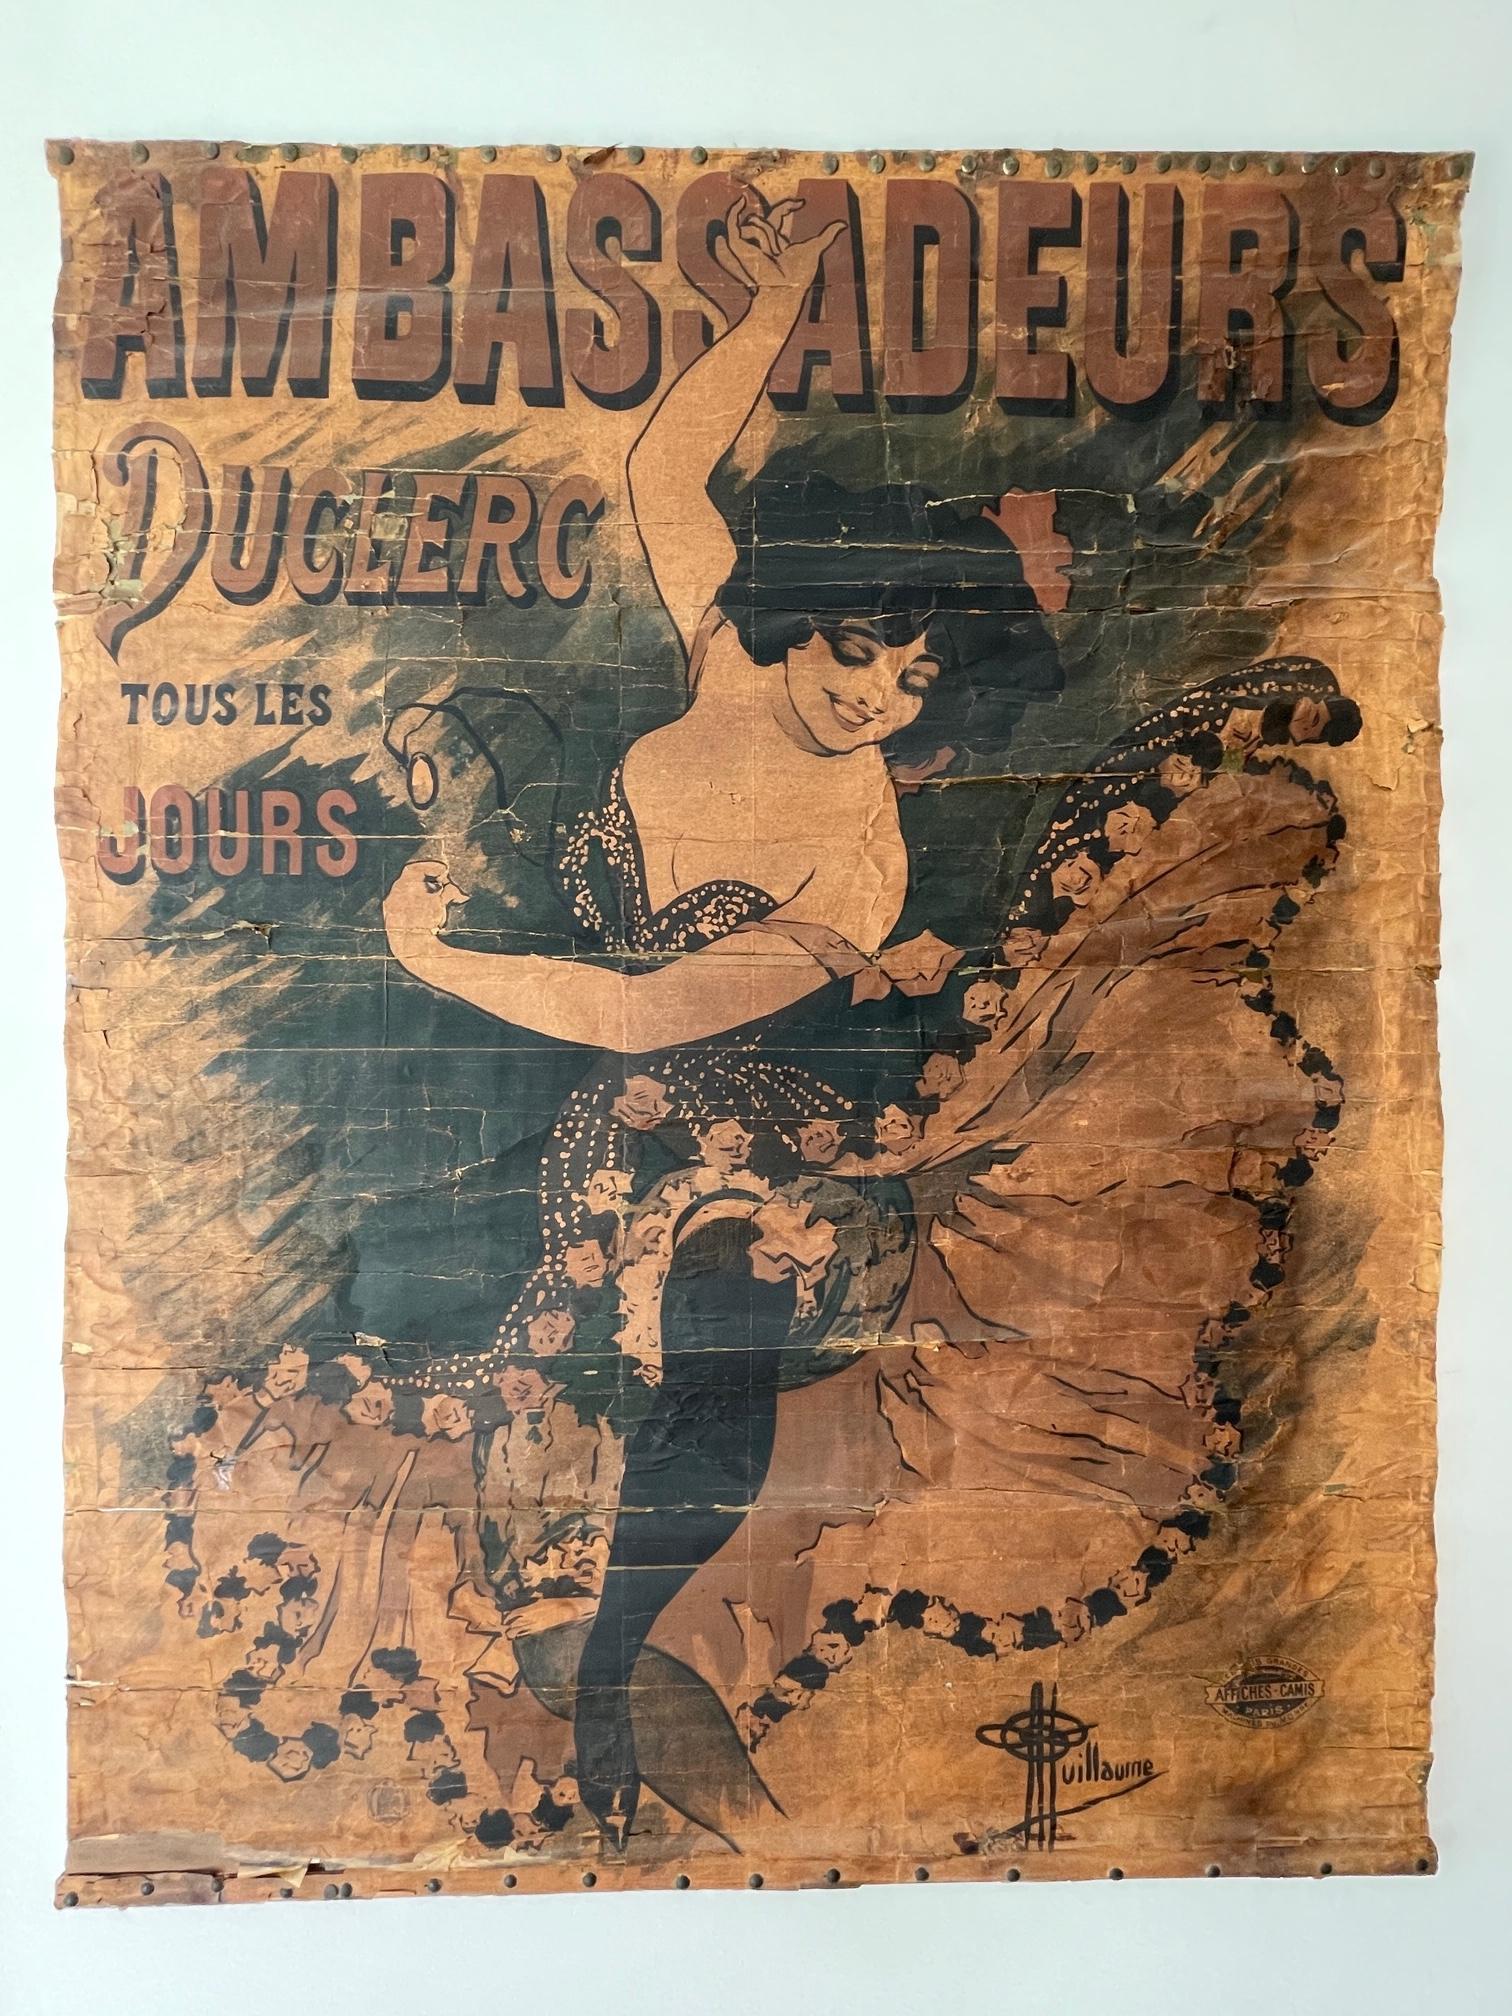 1894 Antique affiche / poster Ambassadeurs Duclerc tous les jours - Guillaume en vente 2